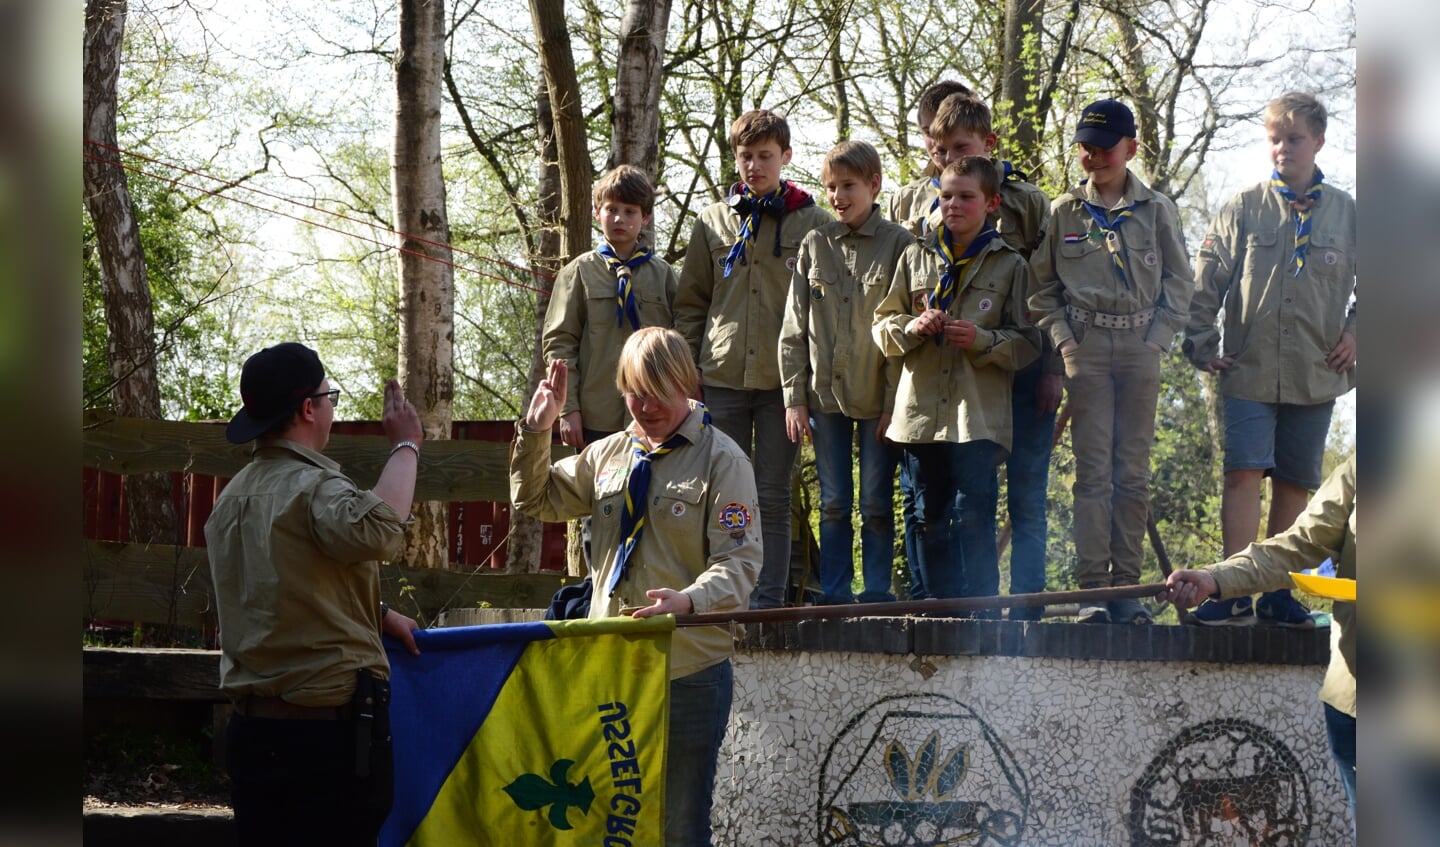 De installatie. Foto: PR/Scouting IJsselgroep Gorssel 